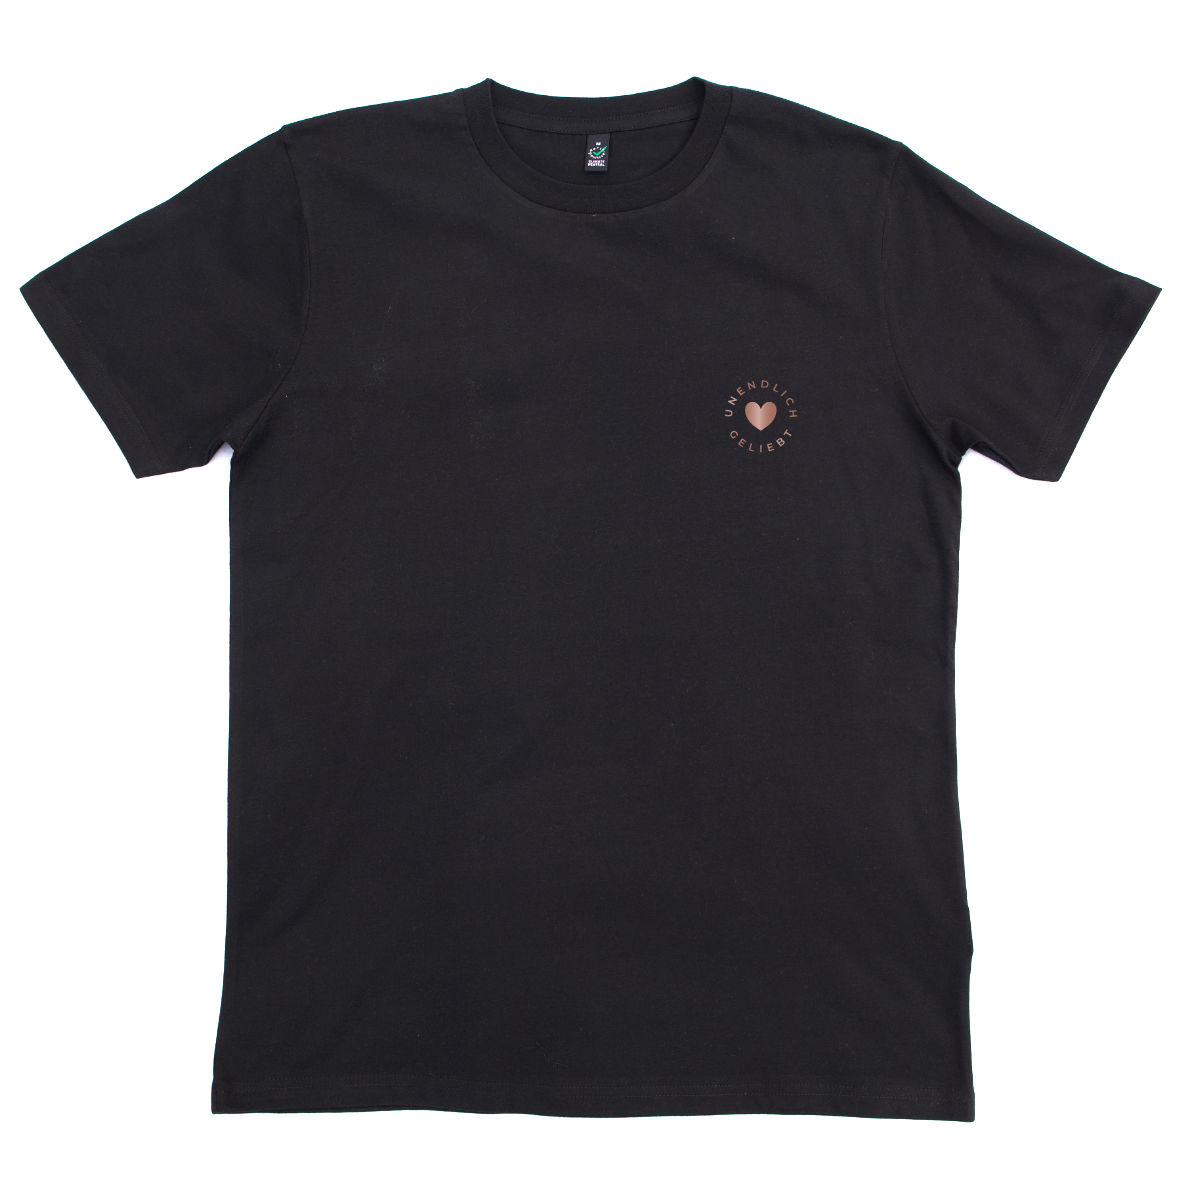 Unisex T-Shirt Unendlich geliebt - schwarz 3